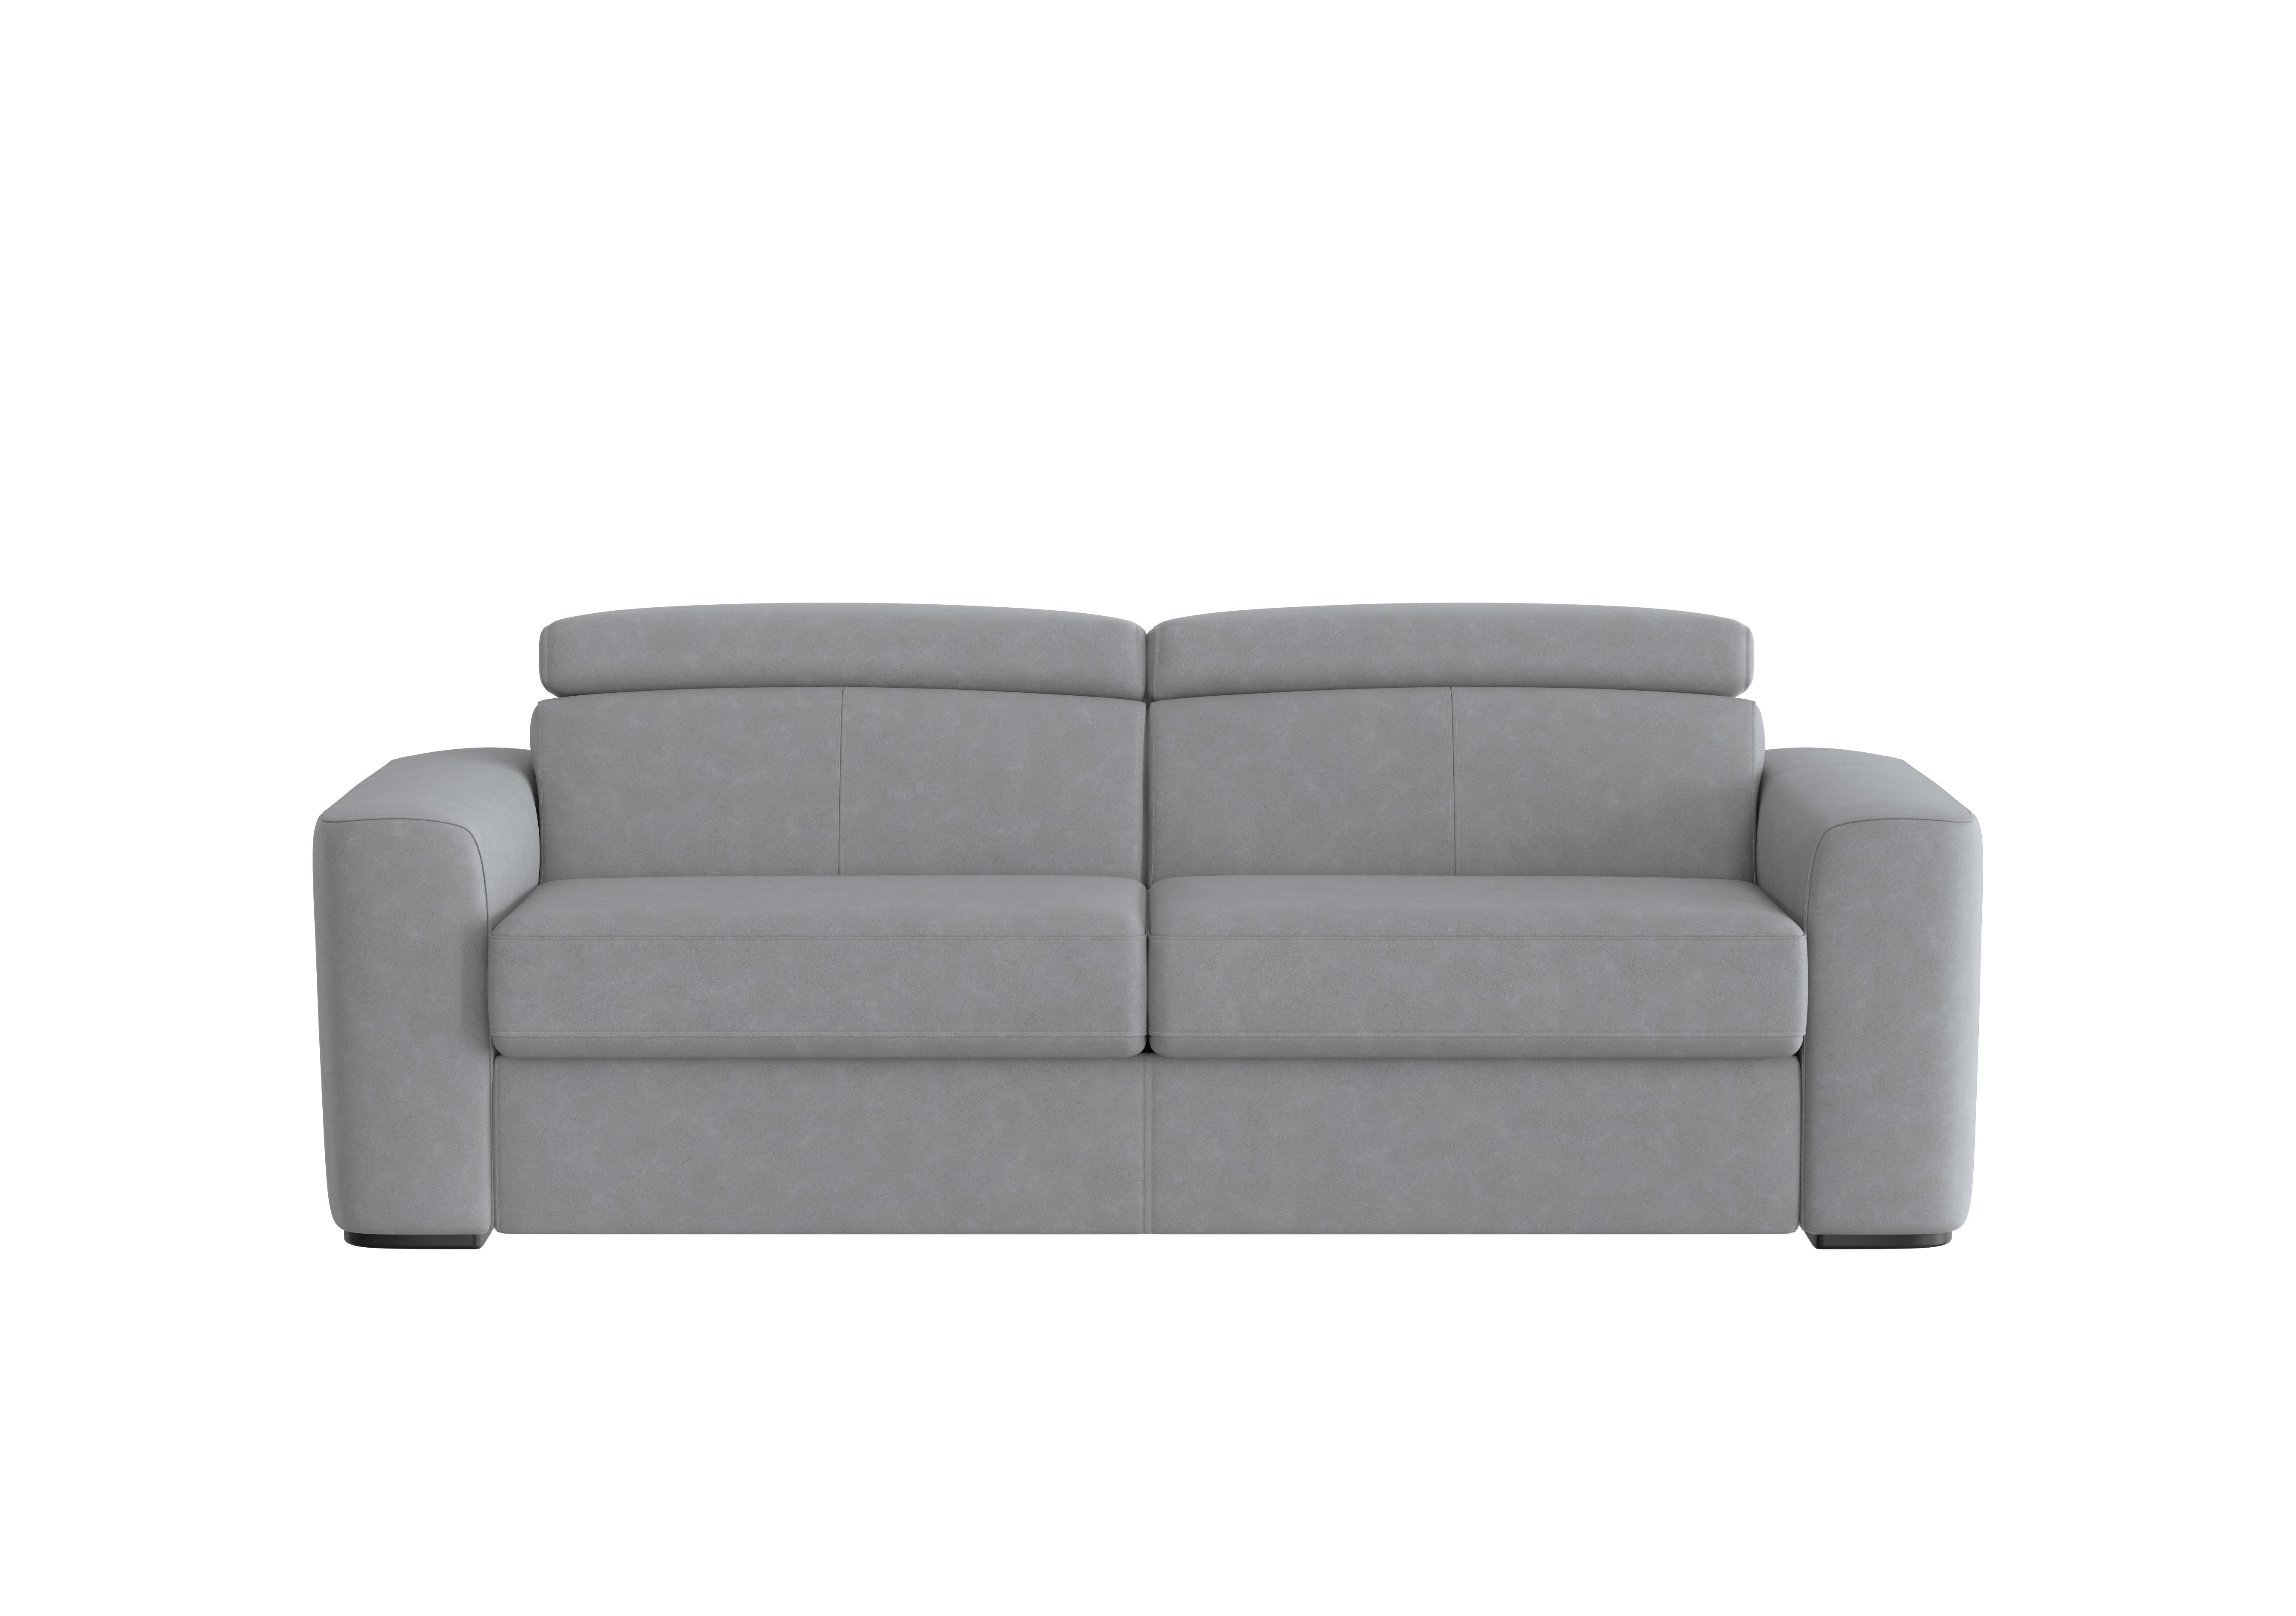 Infinity 3 Seater Fabric Sofa Bed in Bfa-Ori-R07 Bluish Grey on Furniture Village